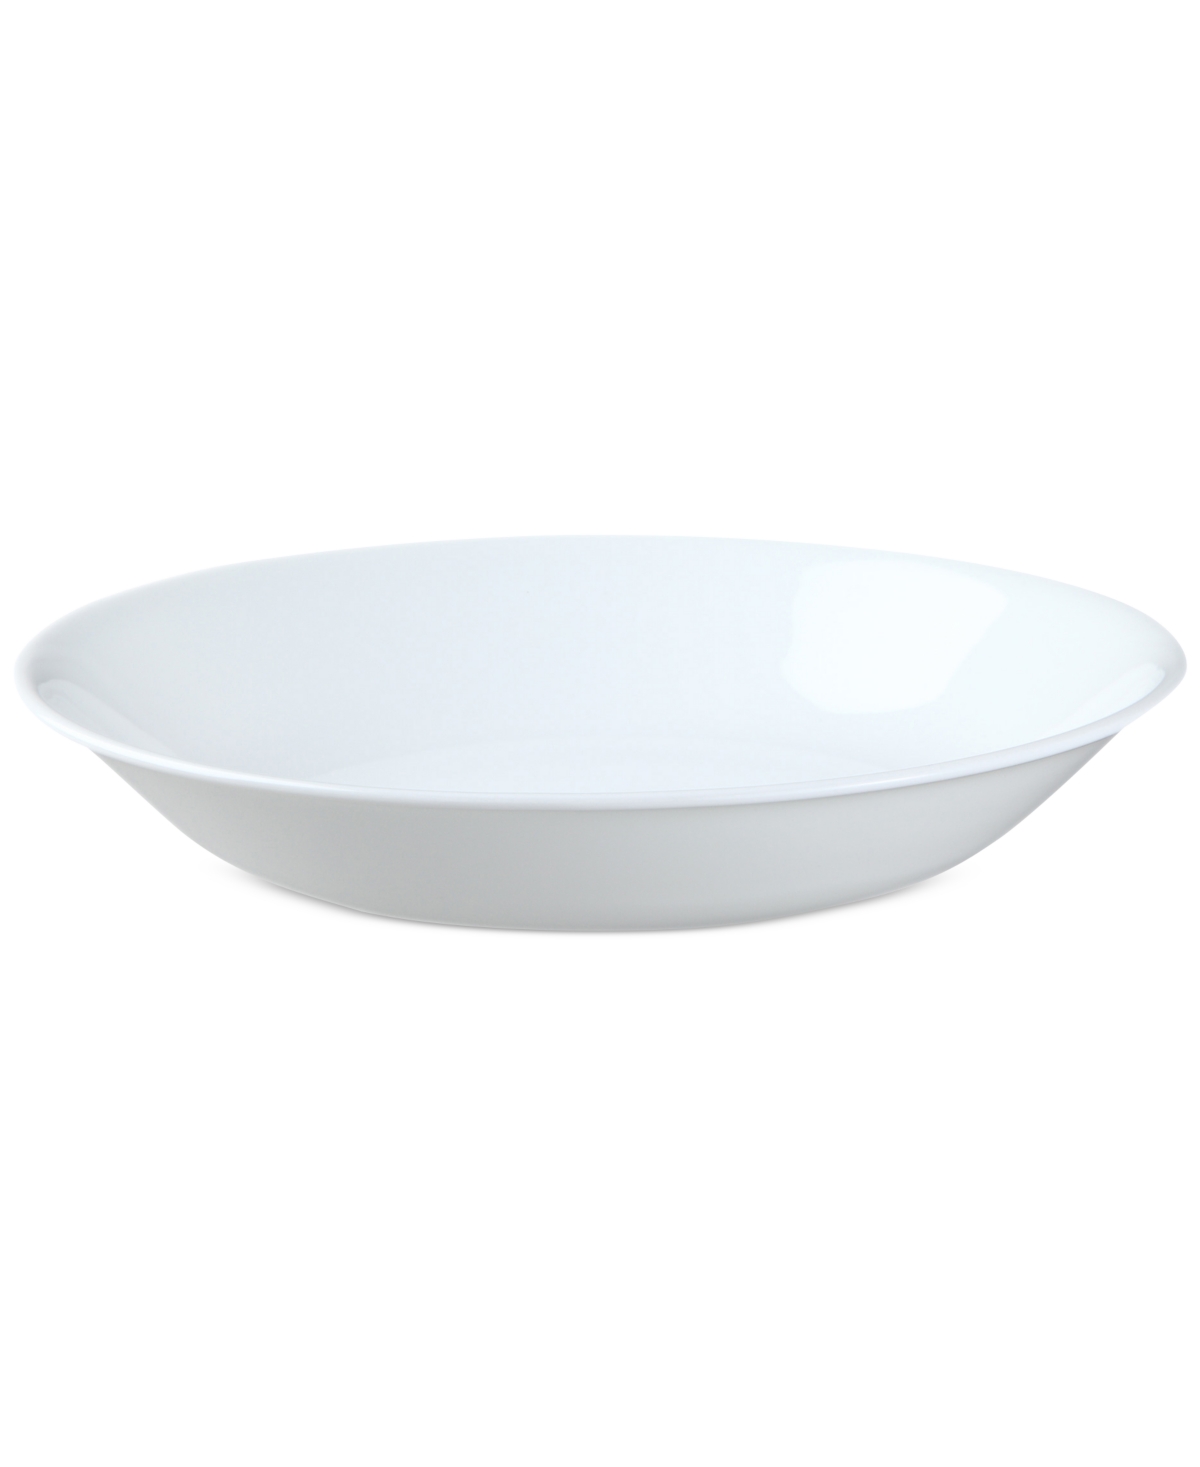 White Pasta Bowl - White